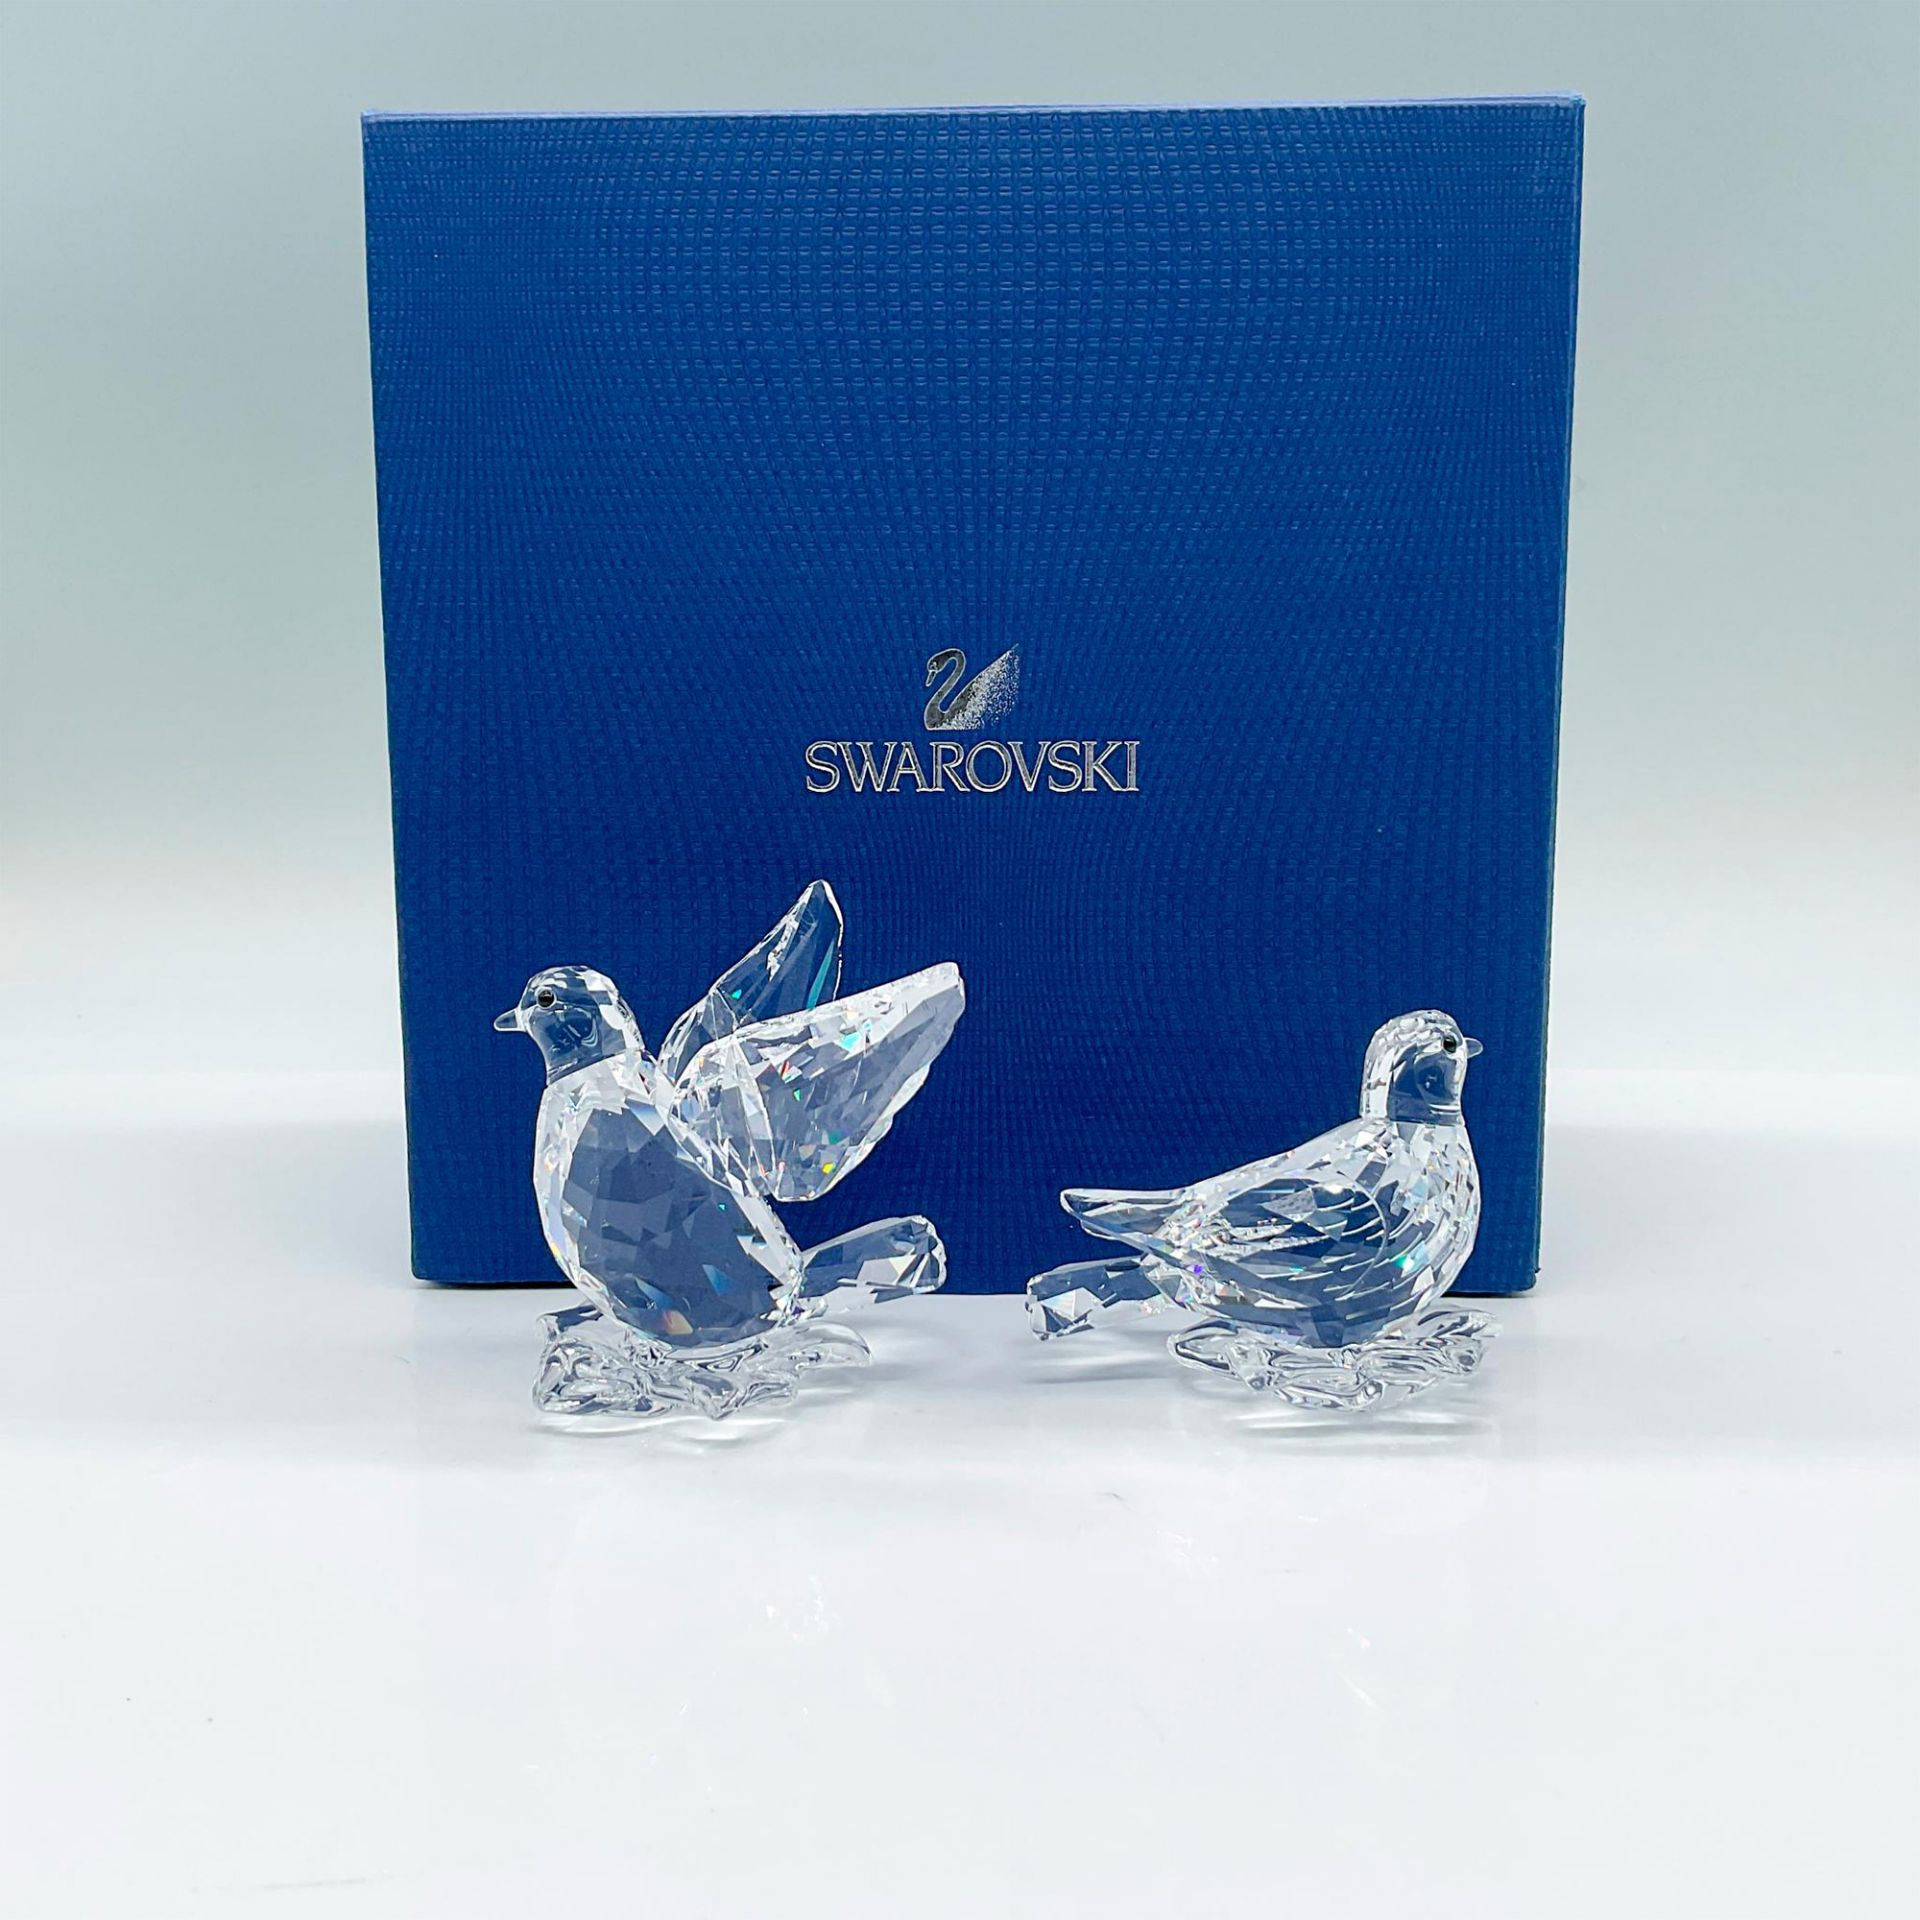 Swarovski Crystal Figurines, Turtledoves - Image 2 of 3